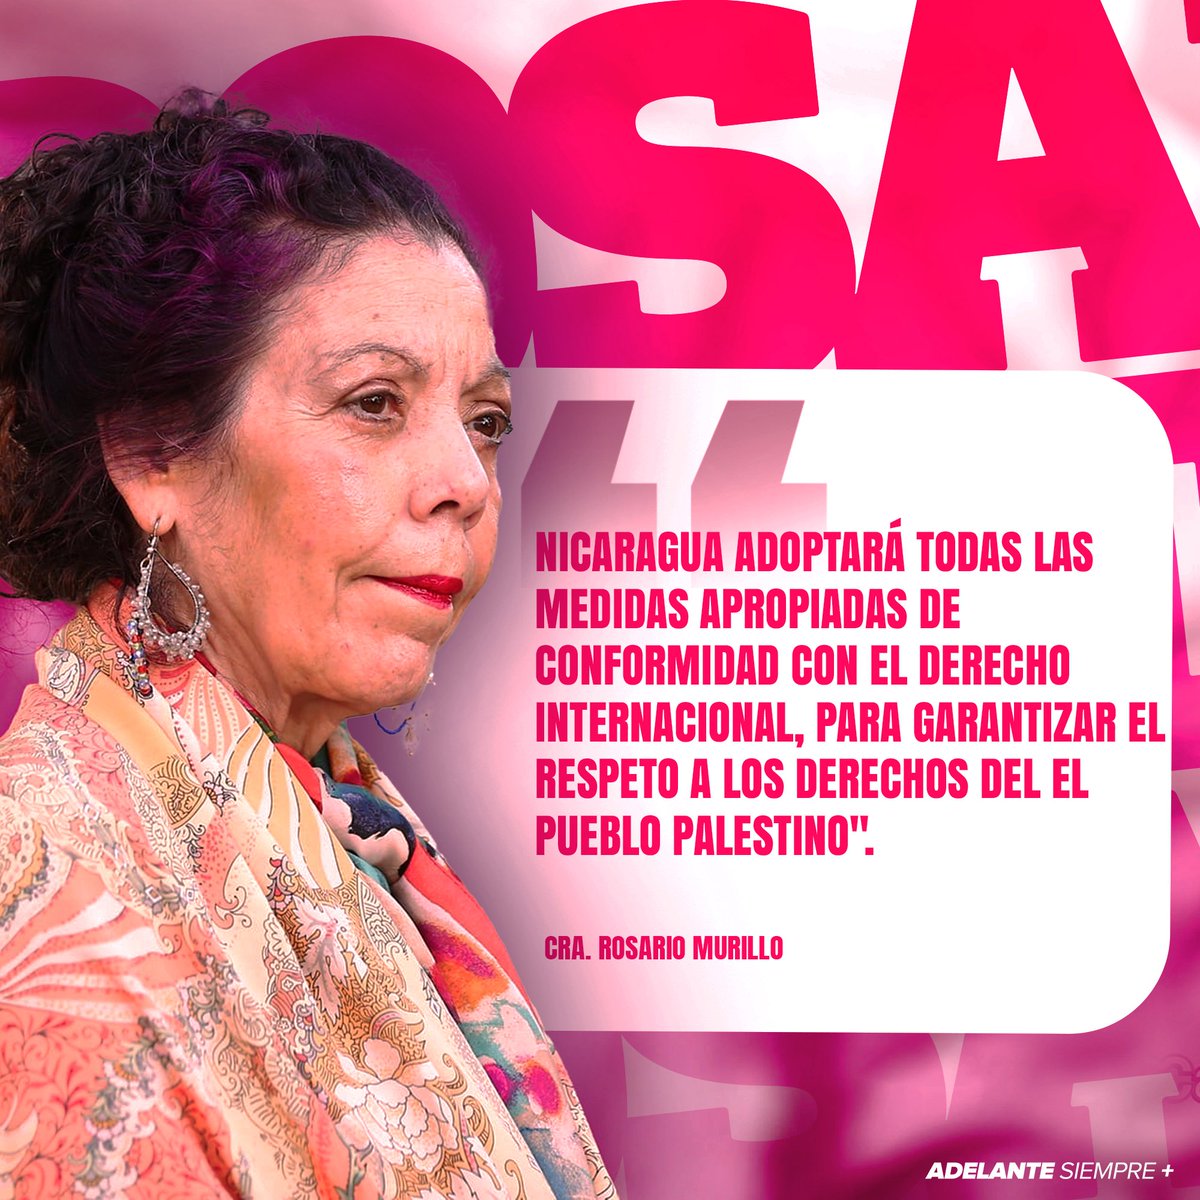 Palabras de la Vicepresidenta Cra. Rosario Murillo hoy viernes 19 de enero del 2024.

#AdelanteSiempre 
#2024HaciaNuevasVictorias